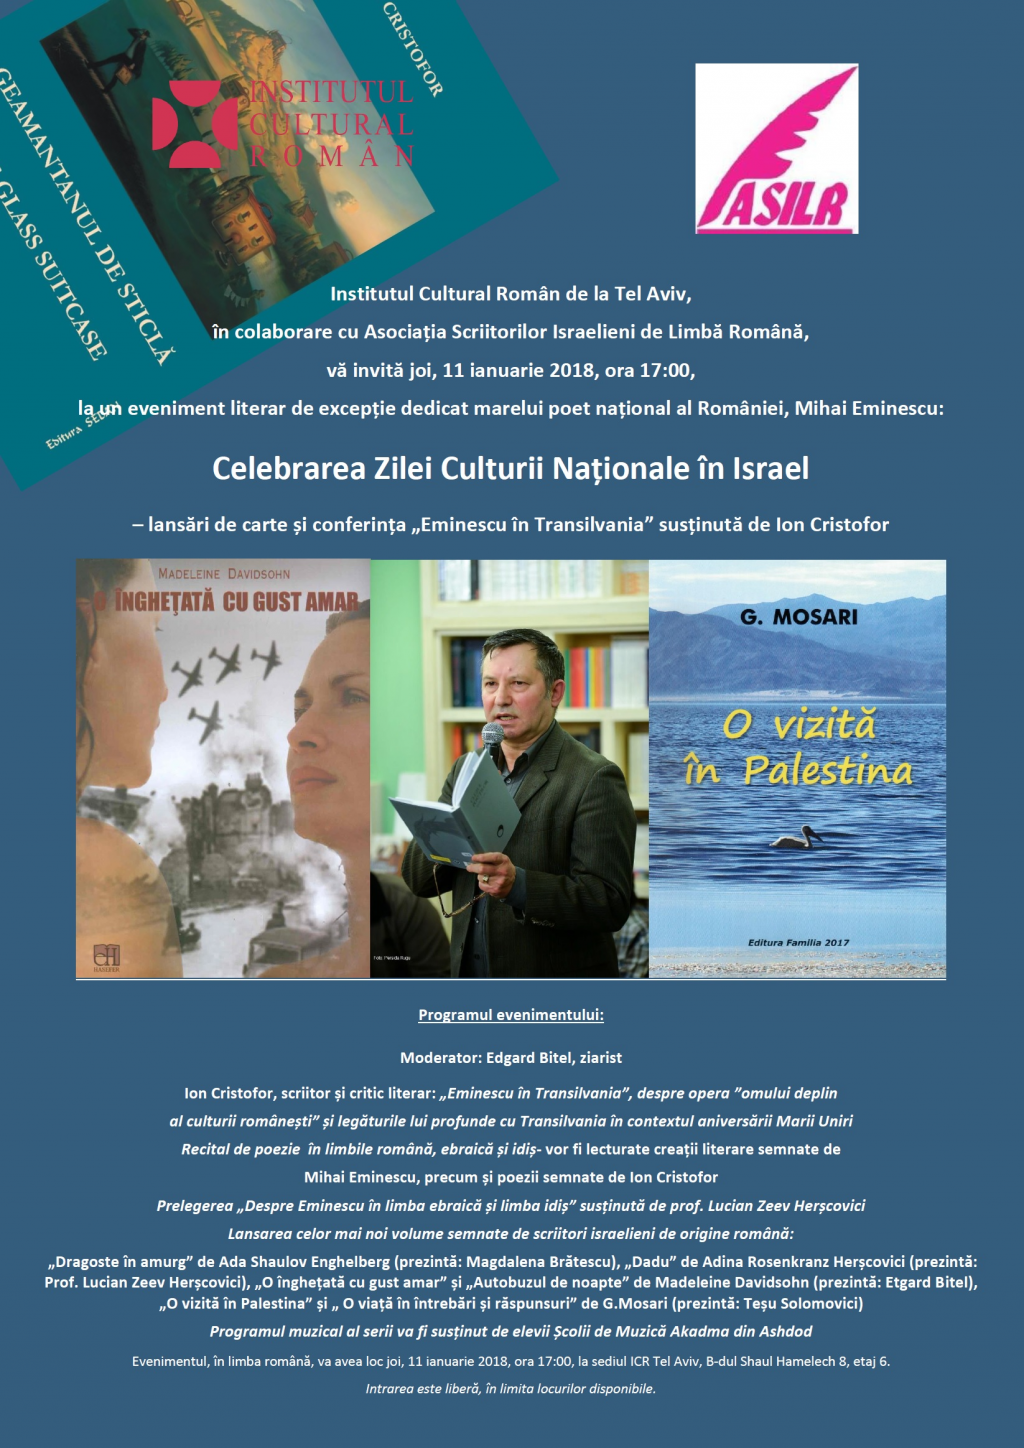 Celebrarea Zilei Culturii Nationale - lansari de carte si conferinta Eminescu in Transilvaniala  sediul ICR Tel Aviv